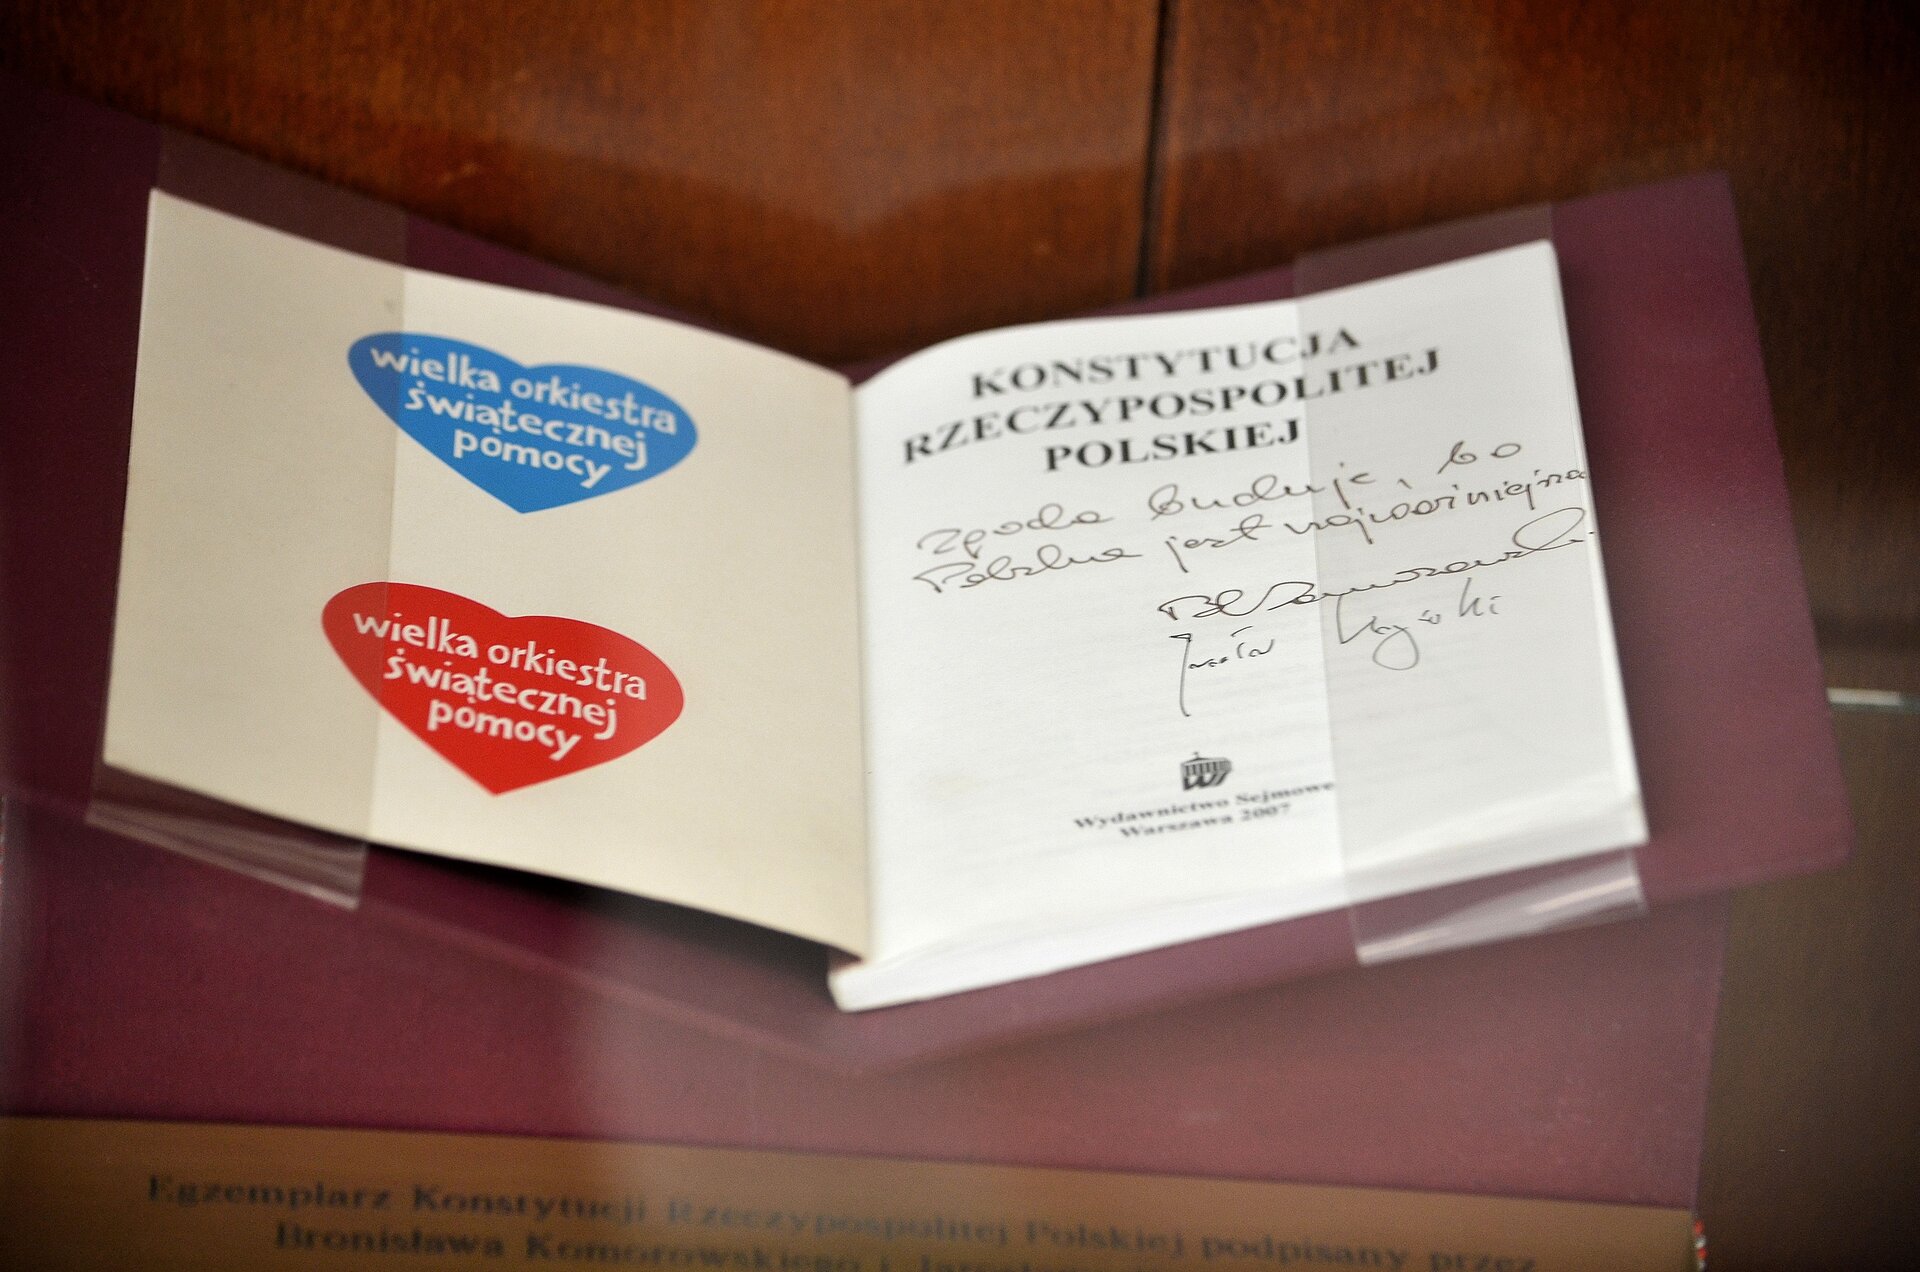 Na zdjęciu znajduje się egzemplarz Konstytucji Rzeczypospolitej Polskiej, podpisany przez Bronisława Komorowskiego i Jarosława Kaczyńskiego, kandydatów na urząd Prezydenta RP, w dniu 2 lipca 2010 r. podczas telewizyjnej debaty prezydenckiej, i przekazany Wielkiej Orkiestrze Świątecznej Pomocy. Po lewej stronie dokumentu na wewnętrznej okładce umieszczono 2 serduszka Wielkiej Orkiestry Świątecznej Pomocy, jedno niebieskie, drugie czerwone. Egzemplarz Konstytucji jest umieszczony w skórzanej oprawie, na podstawce. 